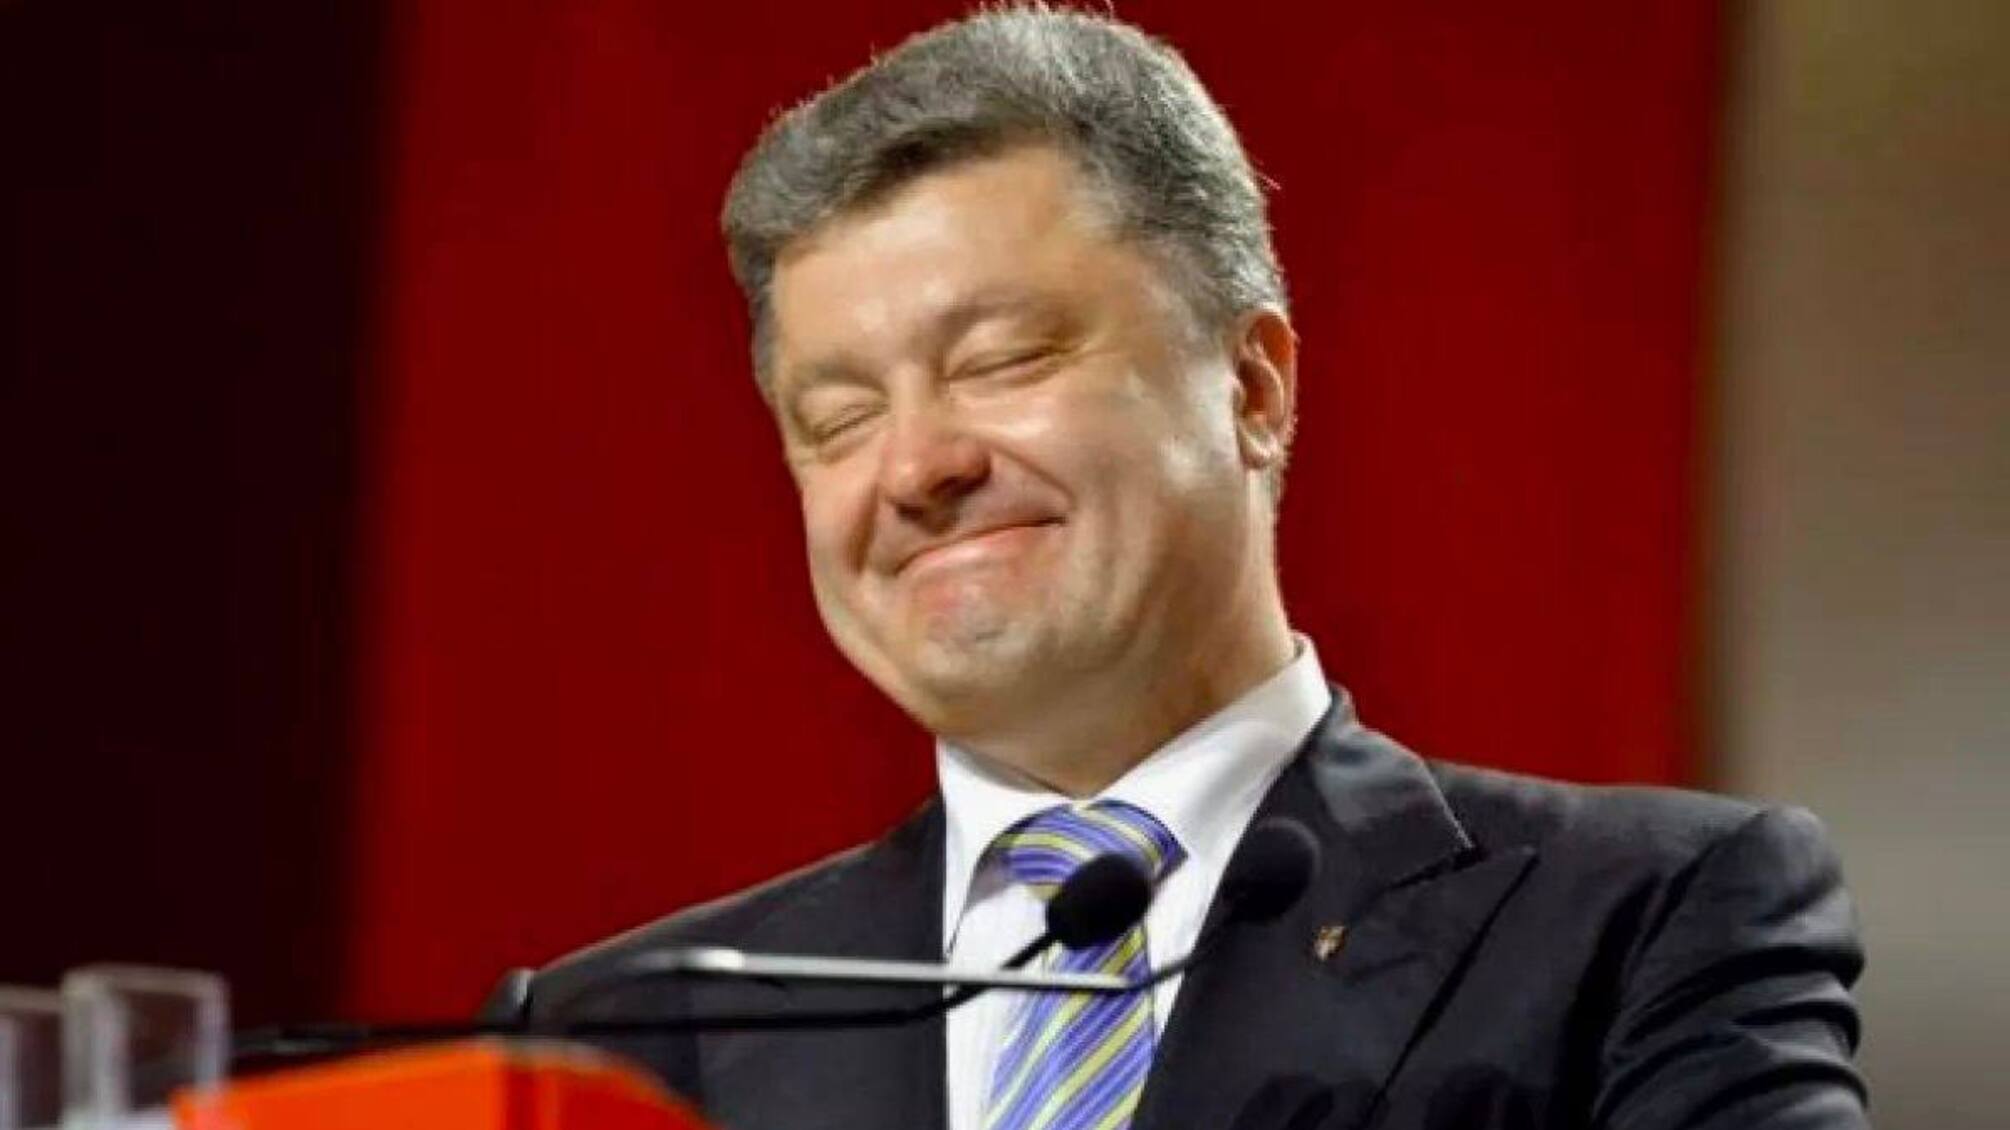  Благодаря собственному банку Порошенко может обогатиться на 50 млн грн за счет донатов украинцев